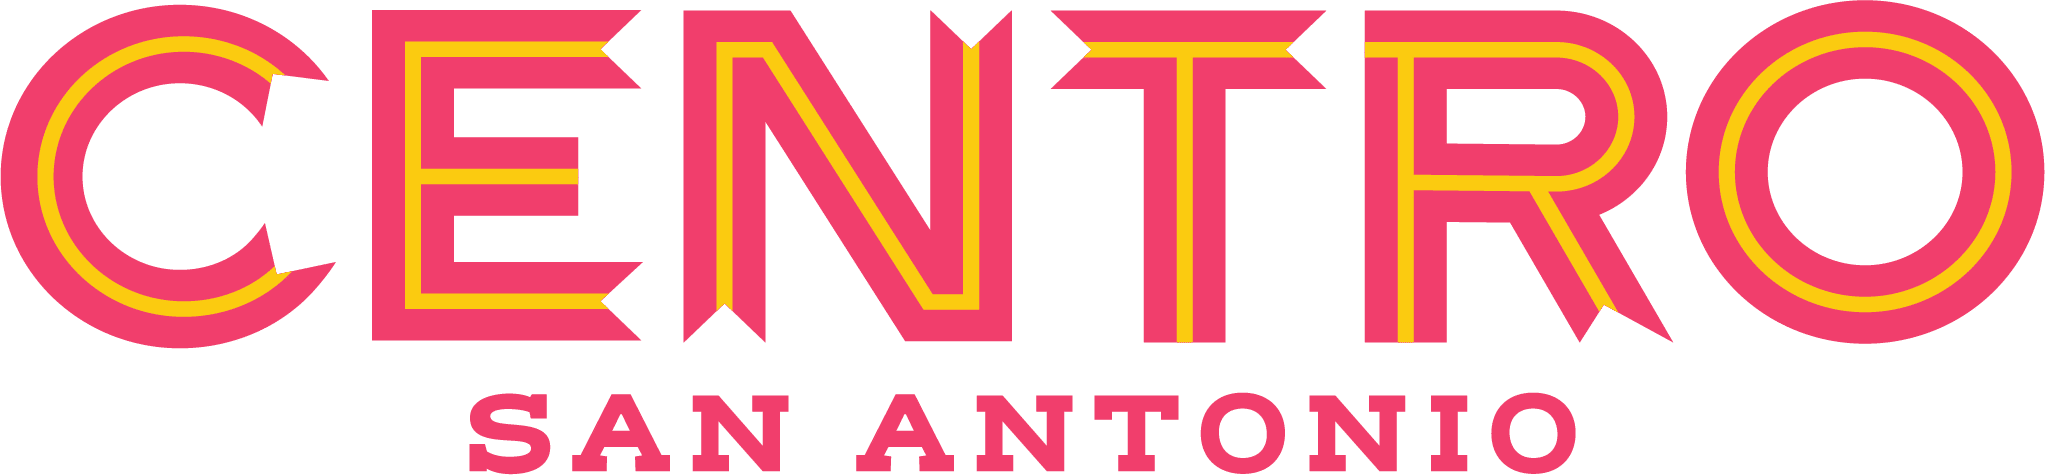 شعار جناح Autonio NIO